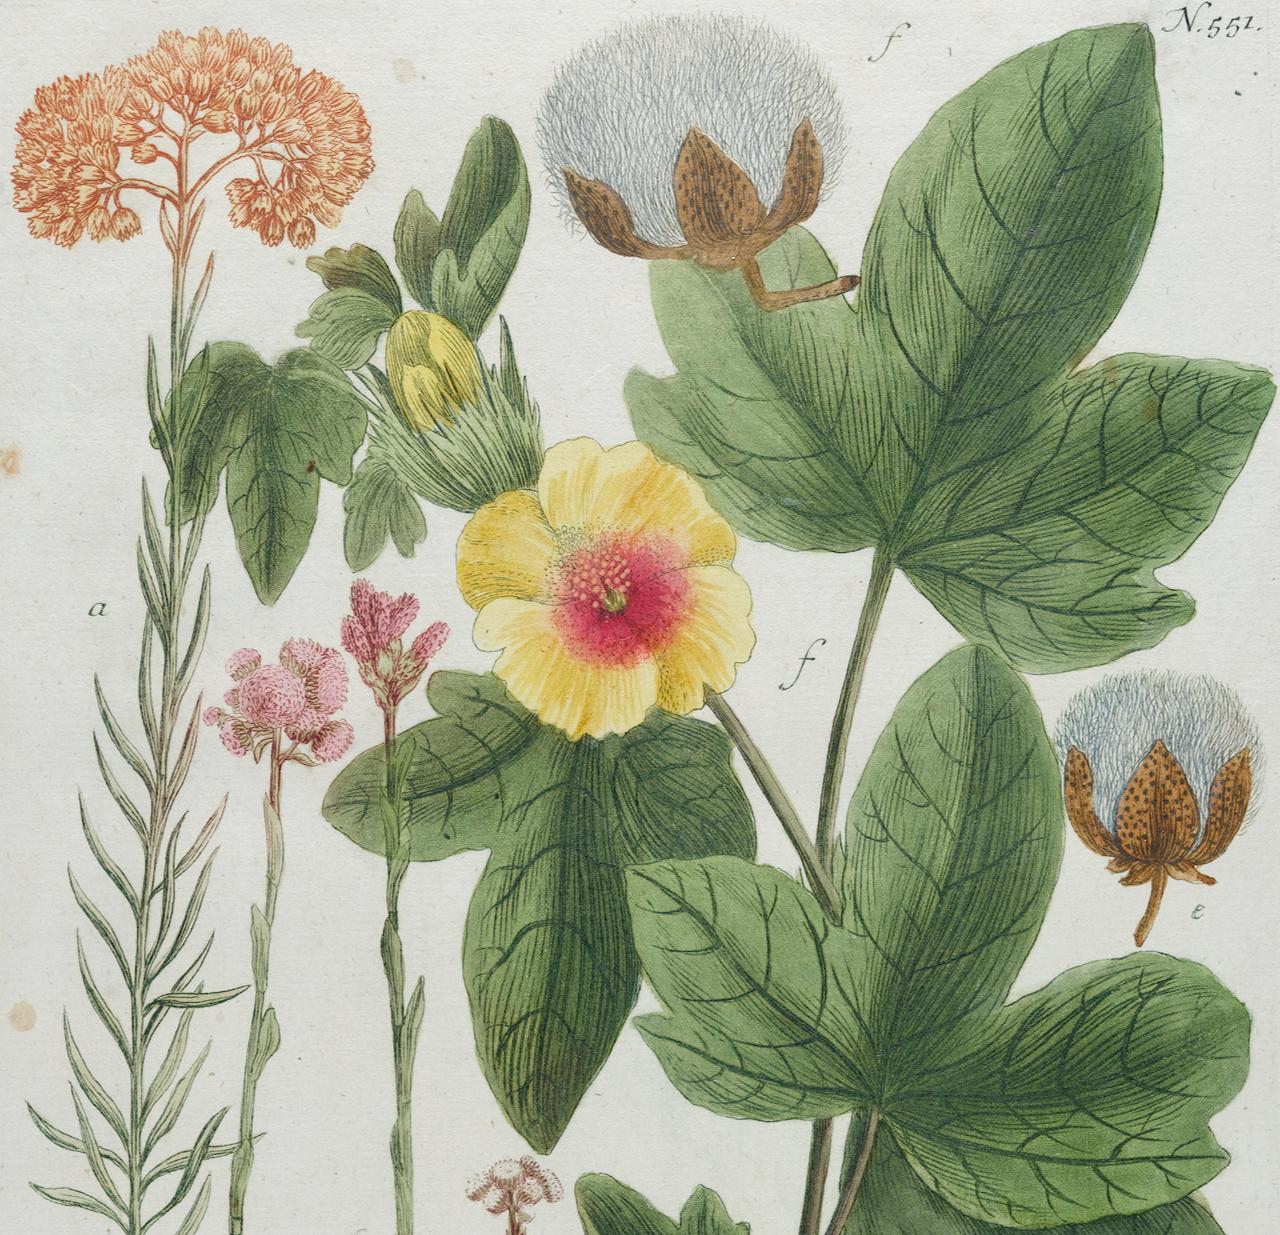 Jardinière en coton : une gravure botanique du 18e siècle colorée à la main par J. Weinmann - Naturalisme Print par Johann Wilhelm Weinmann